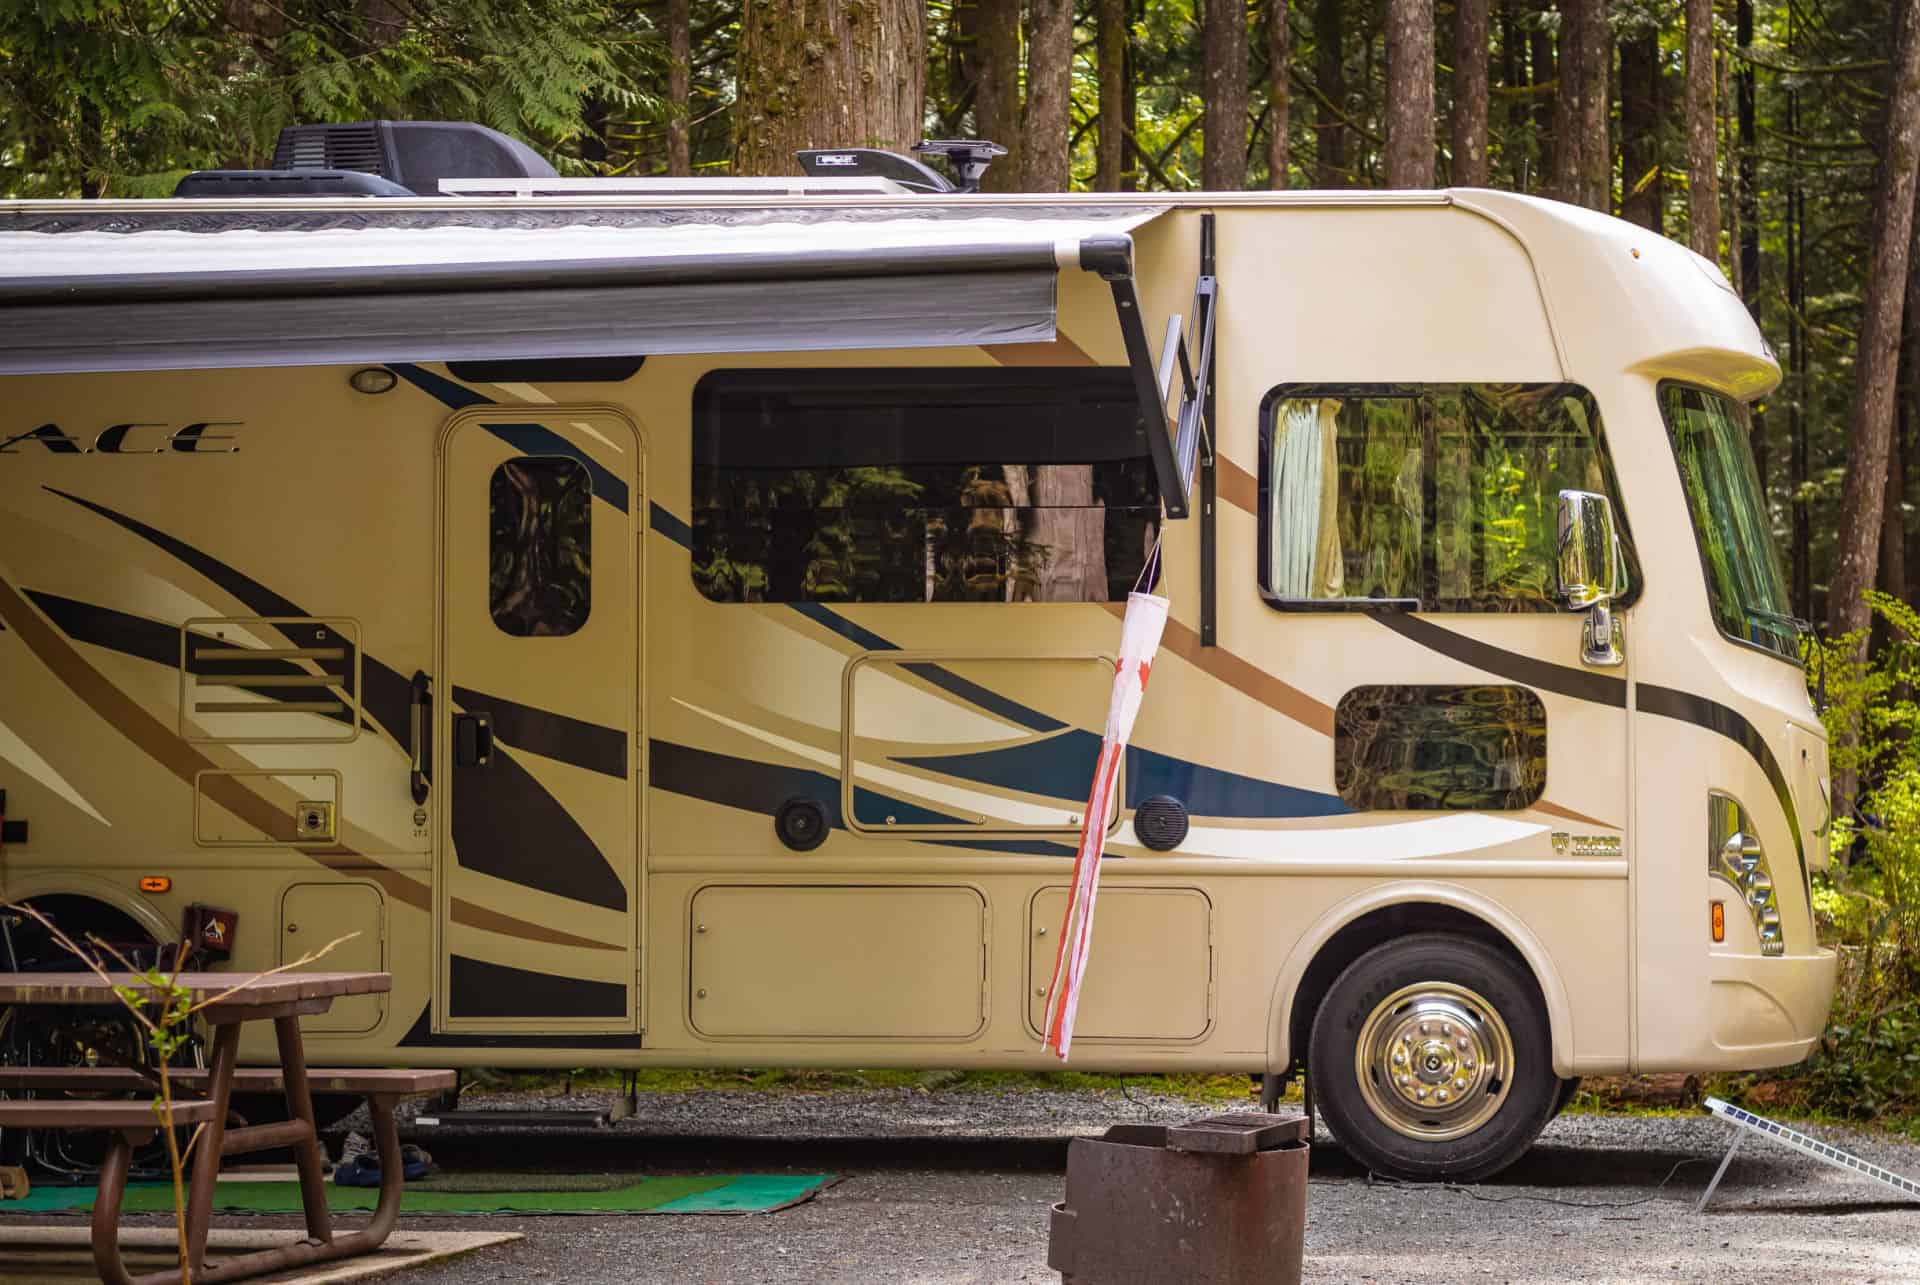 van ou camping car road trip canada